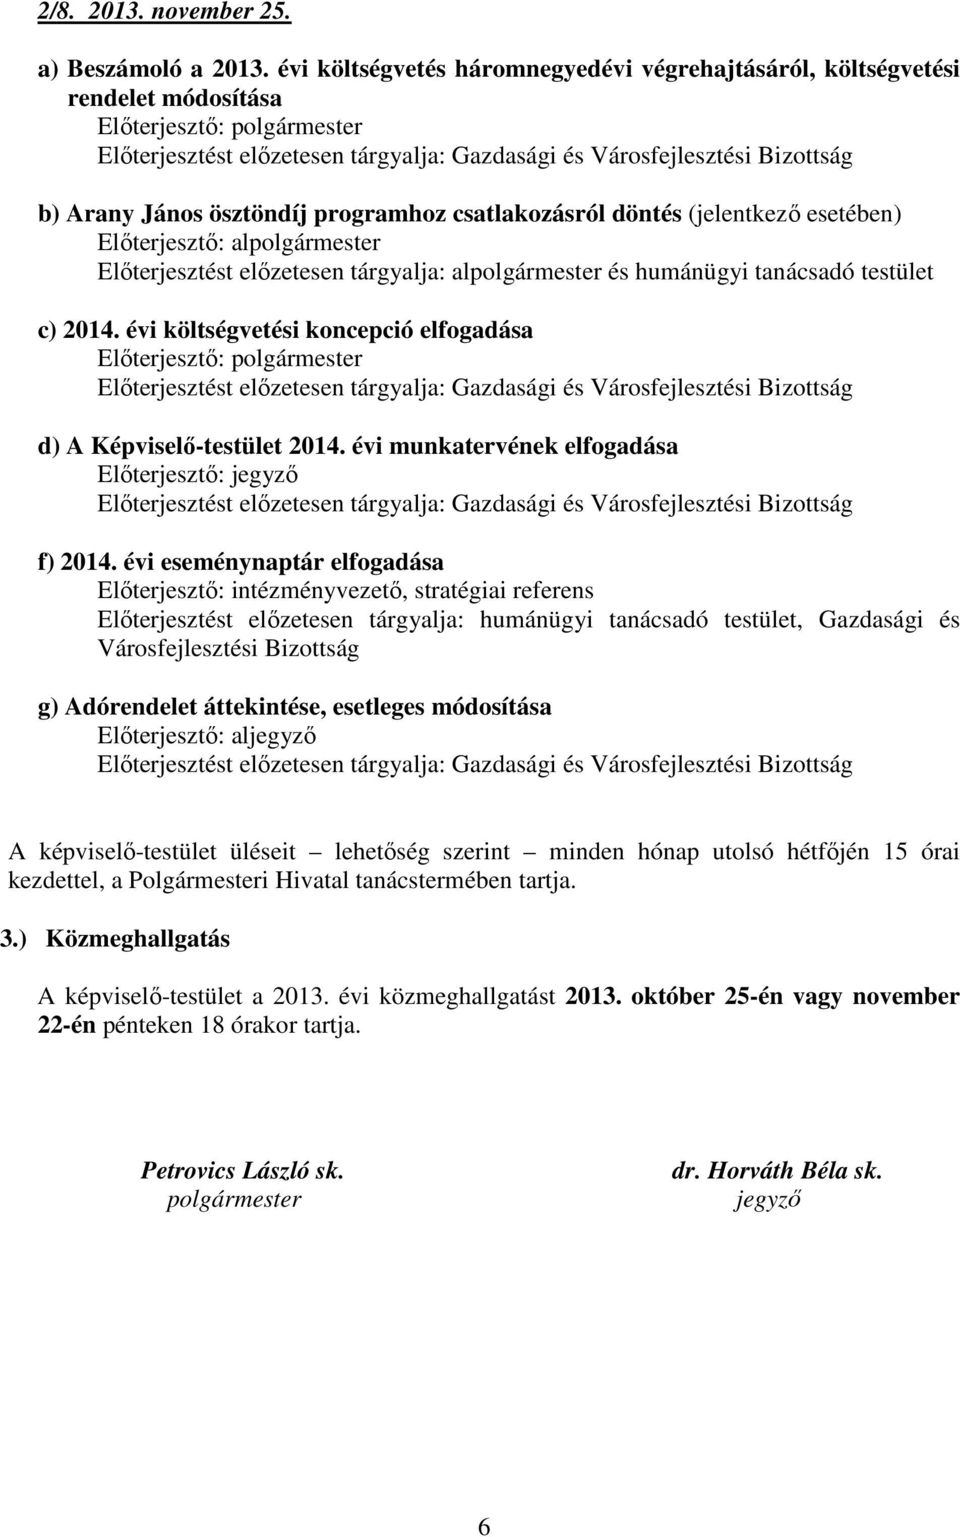 évi költségvetési koncepció elfogadása d) A Képviselő-testület 2014. évi munkatervének elfogadása f) 2014.